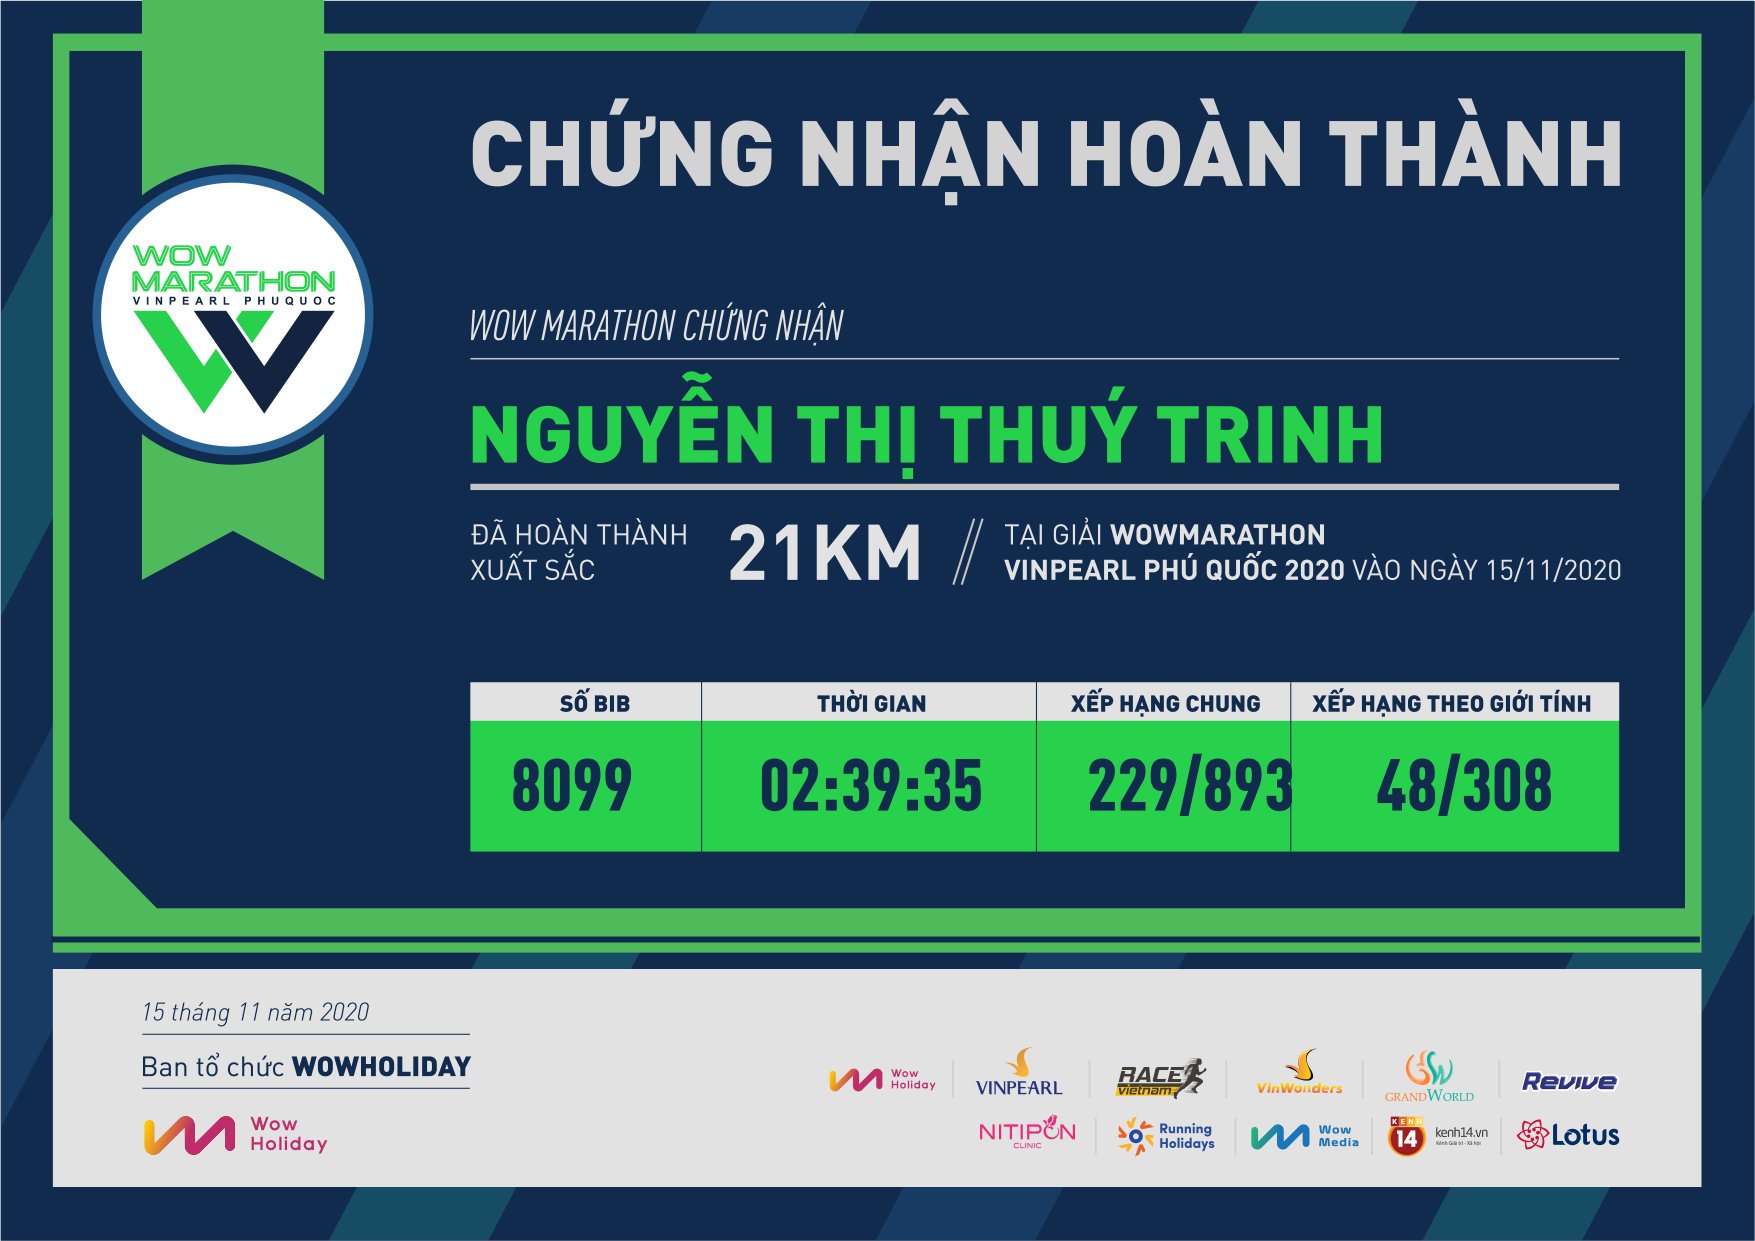 8099 - Nguyễn Thị Thuý Trinh